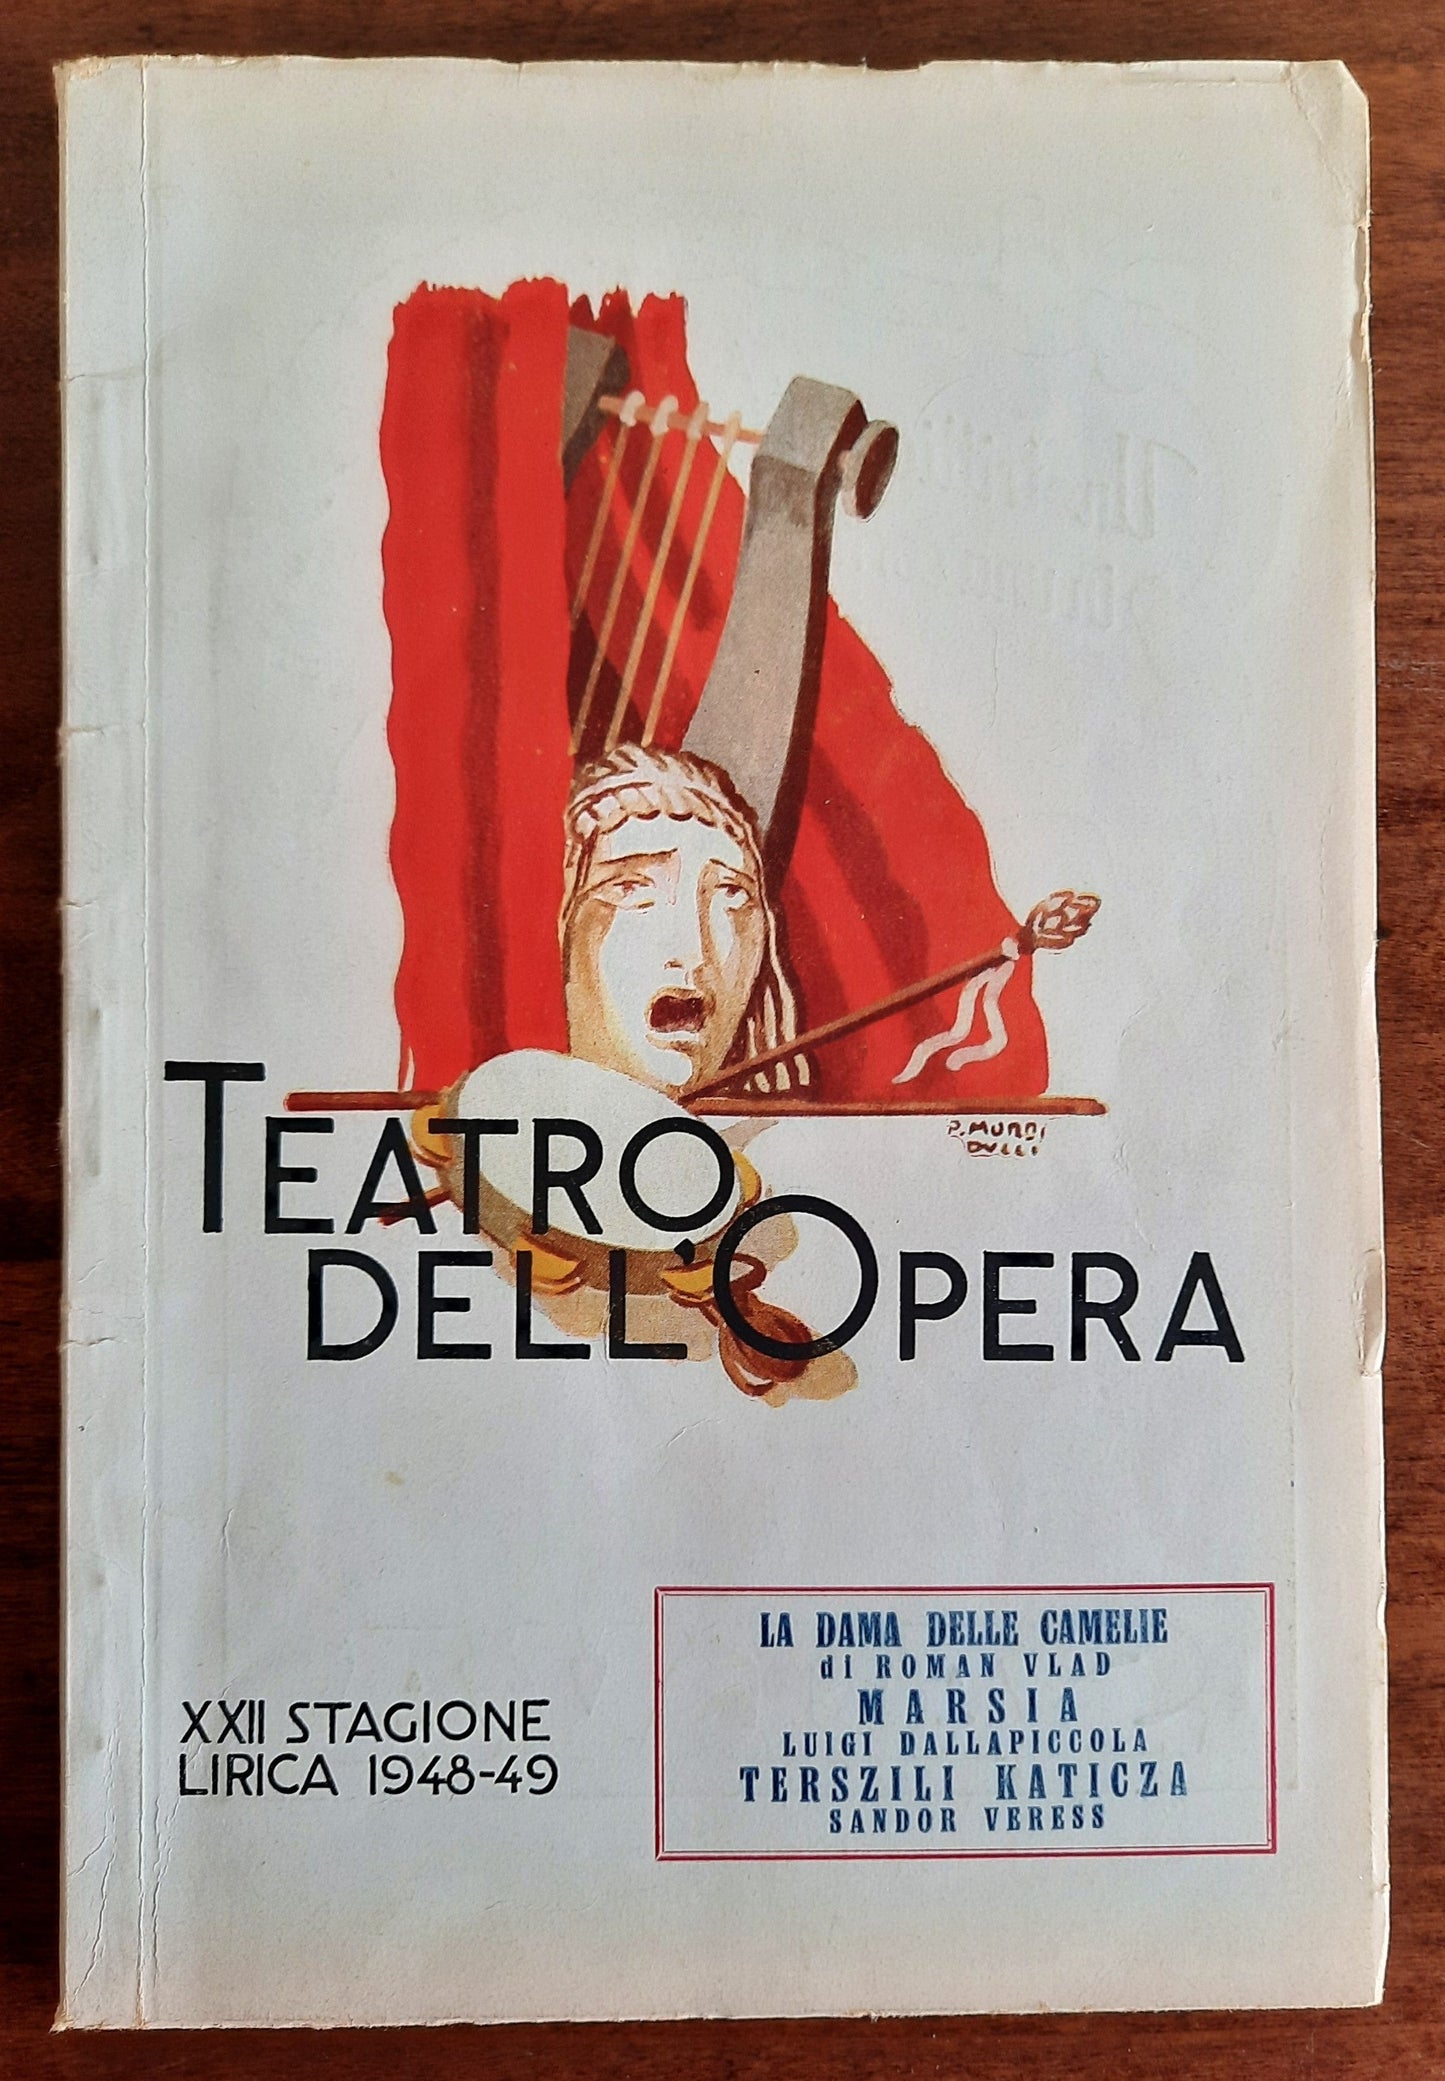 Teatro Dell'Opera - XXII Stagione Lirica 1948 - 49